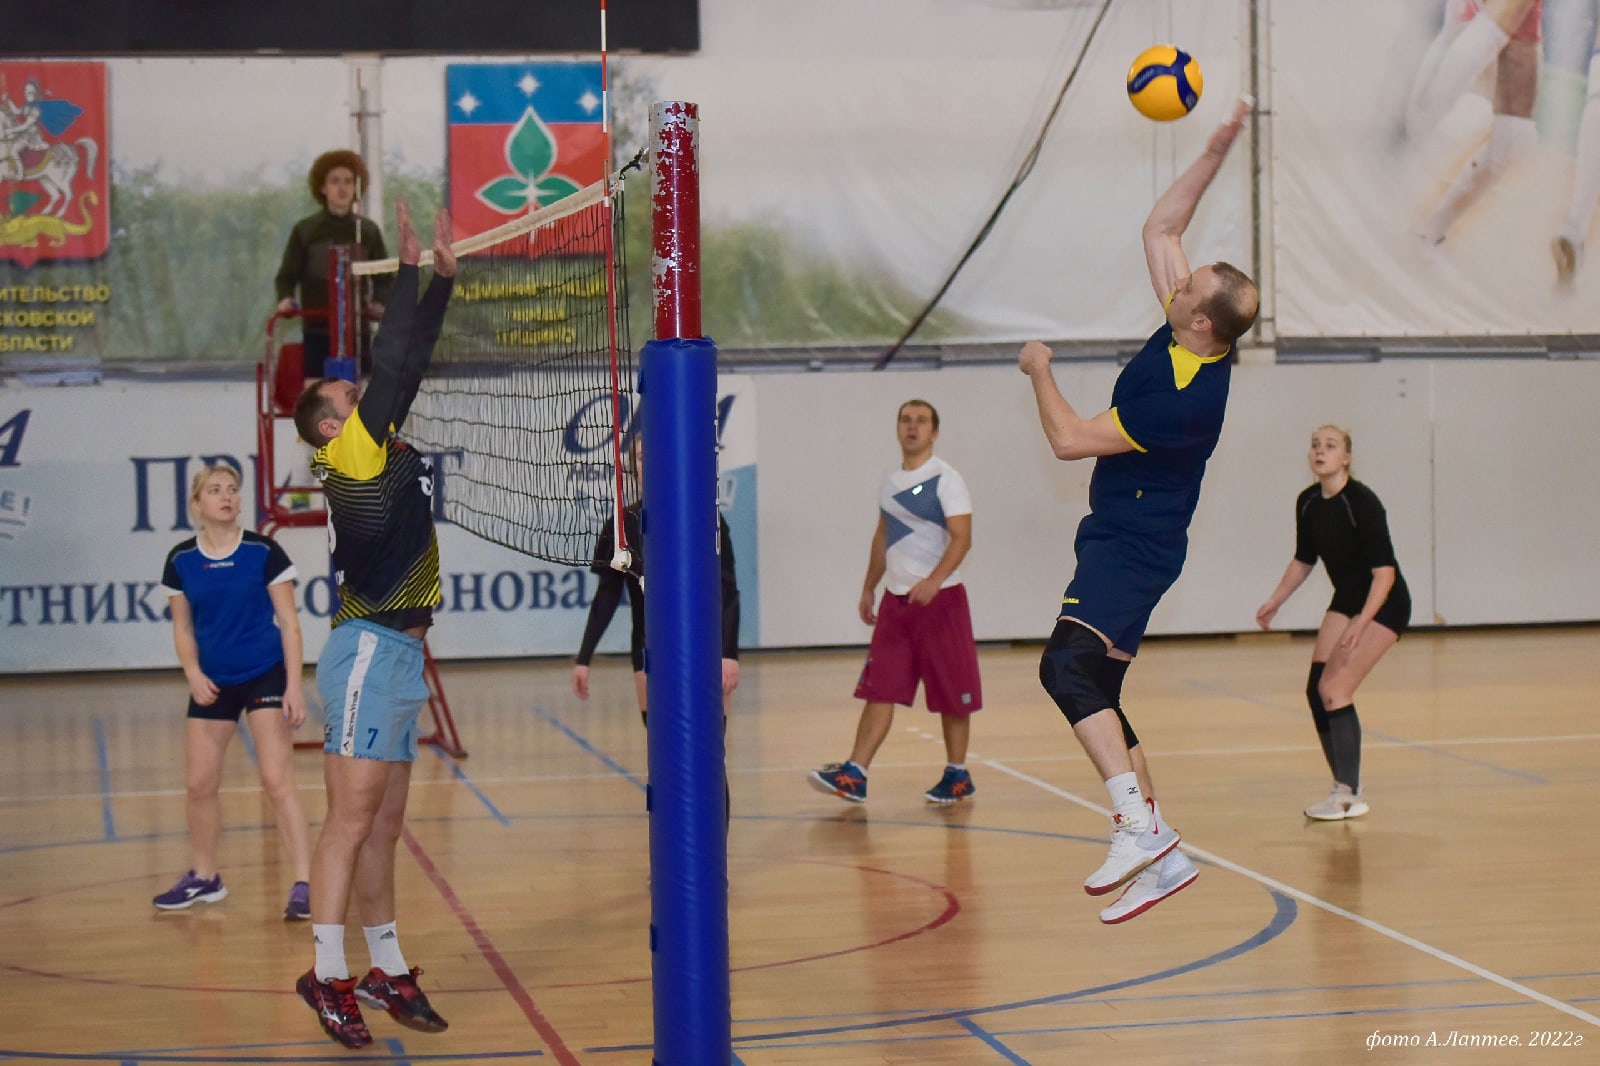 Волейбольный турнир завершил серию соревнований, проводимых в рамках Декады спорта